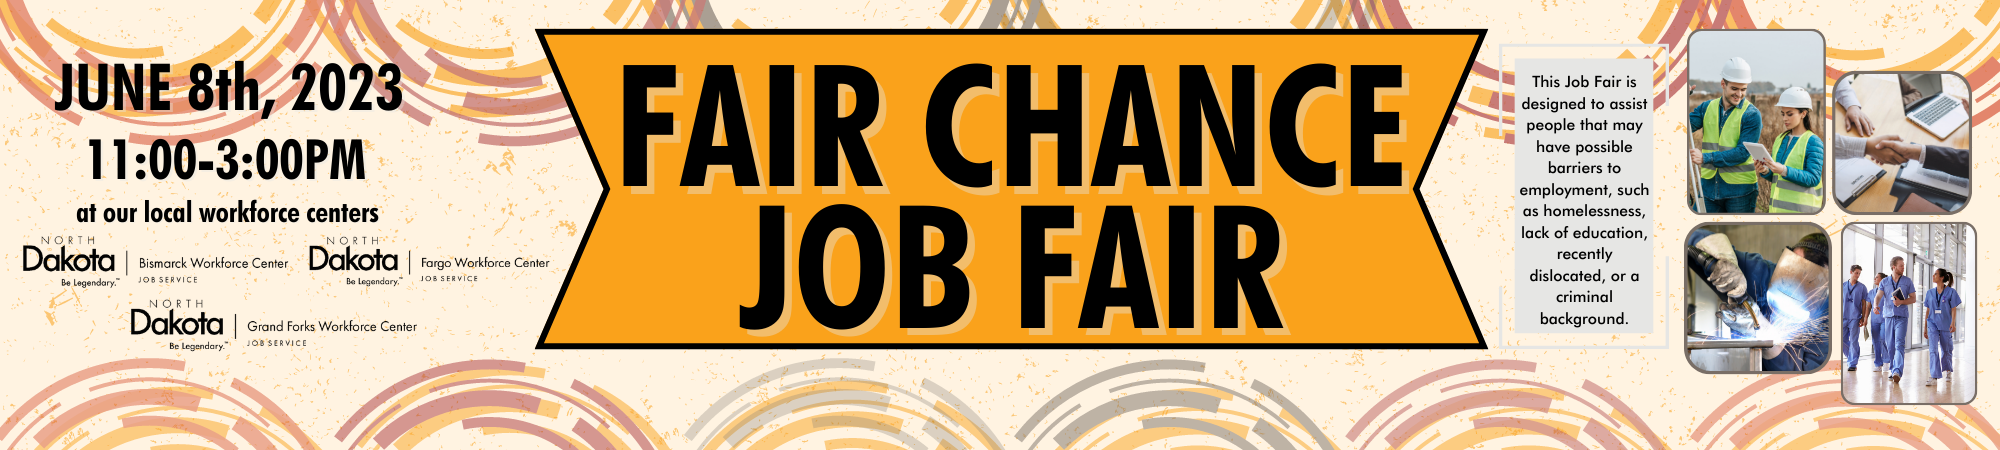 Attend Job Fair